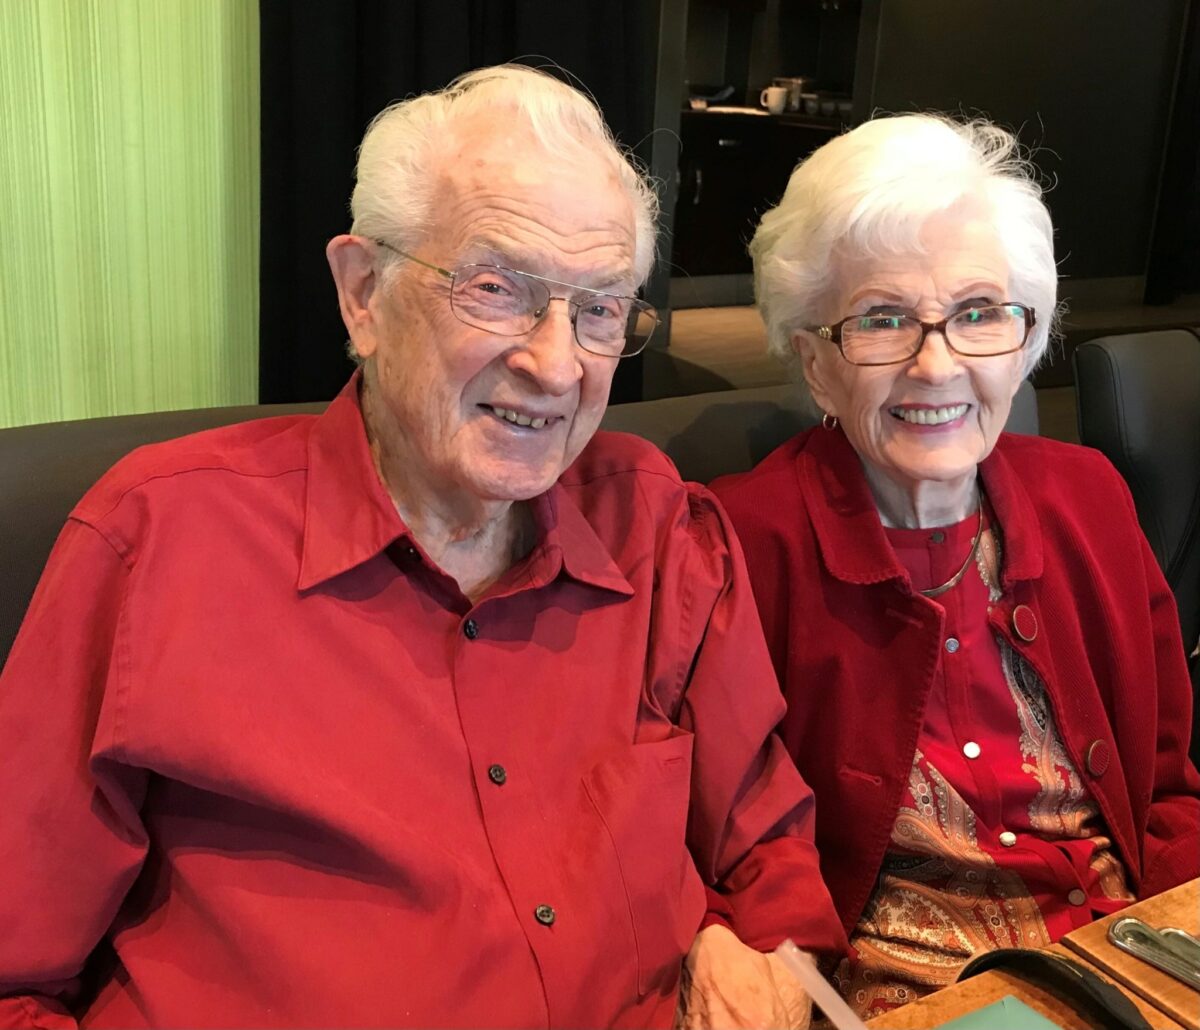 Lecția de iubire a lui Loree și Steele. Cei doi au sărbătorit 78 de ani de căsnicie